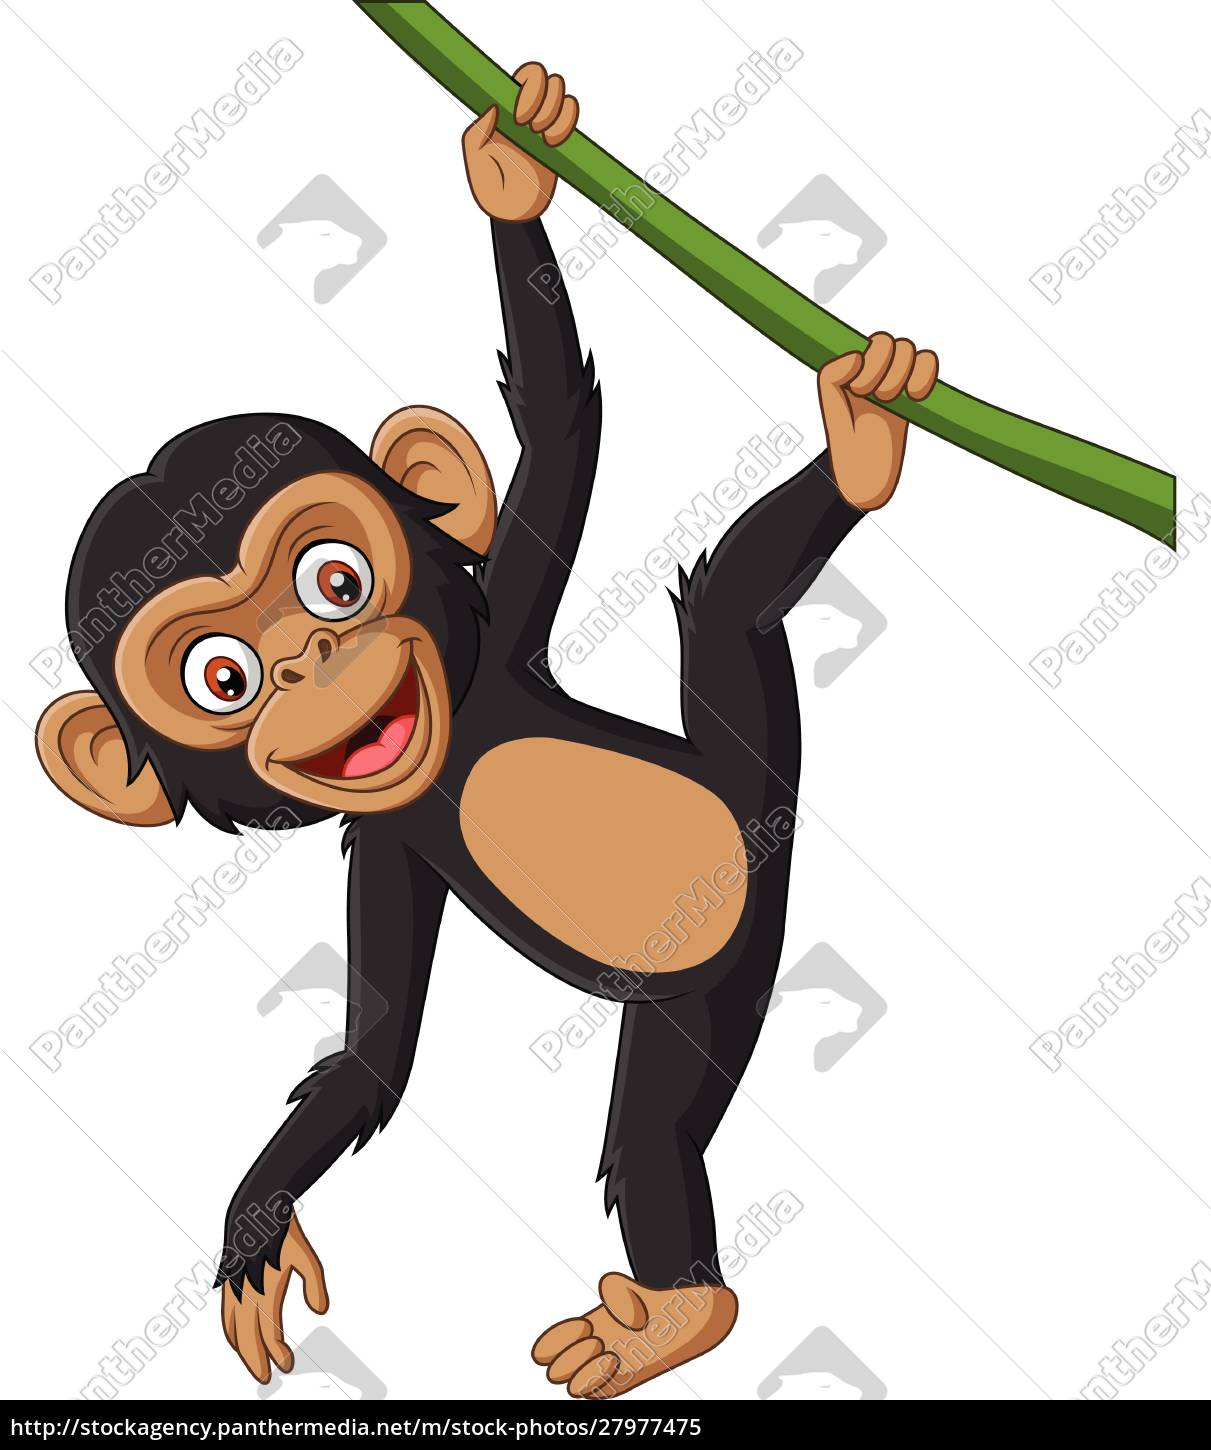 Desenho de macaco fofo pendurado no galho de uma árvore